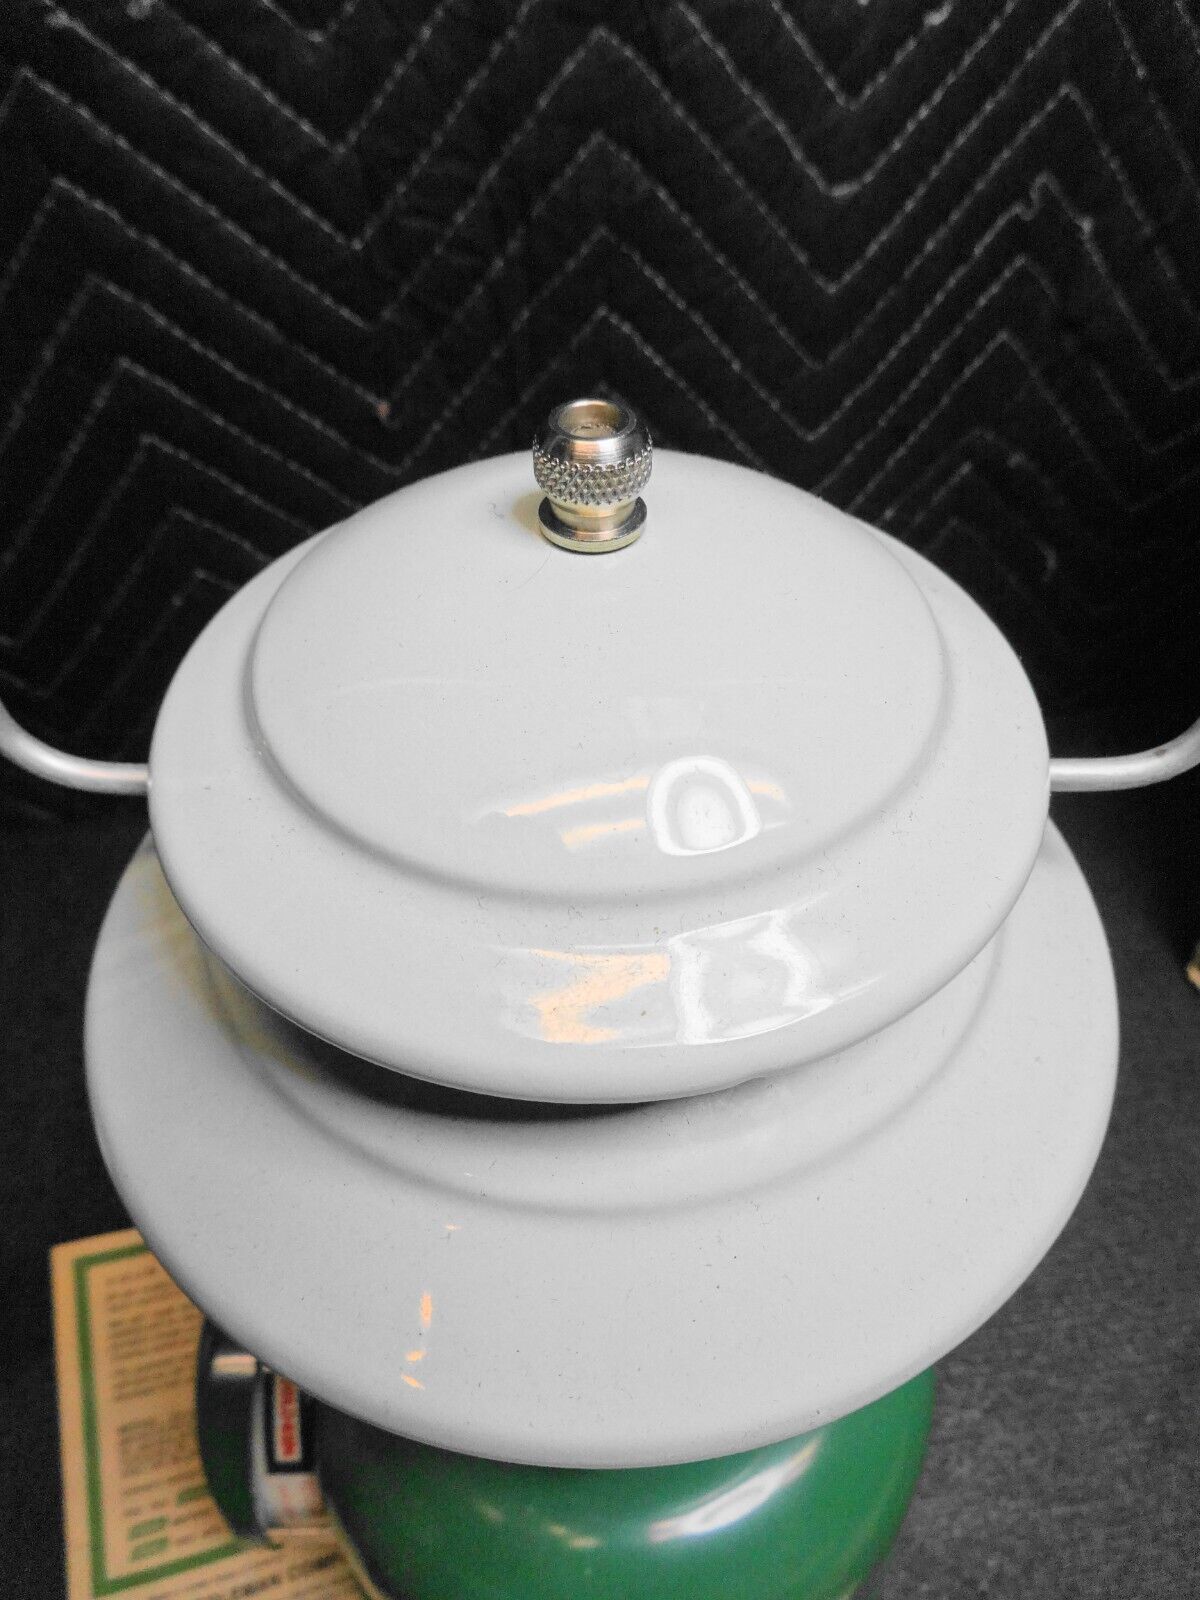 VTG NOS Coleman 5122-700 LP Gas Single Mantle Globe Lantern Green w/Box papers